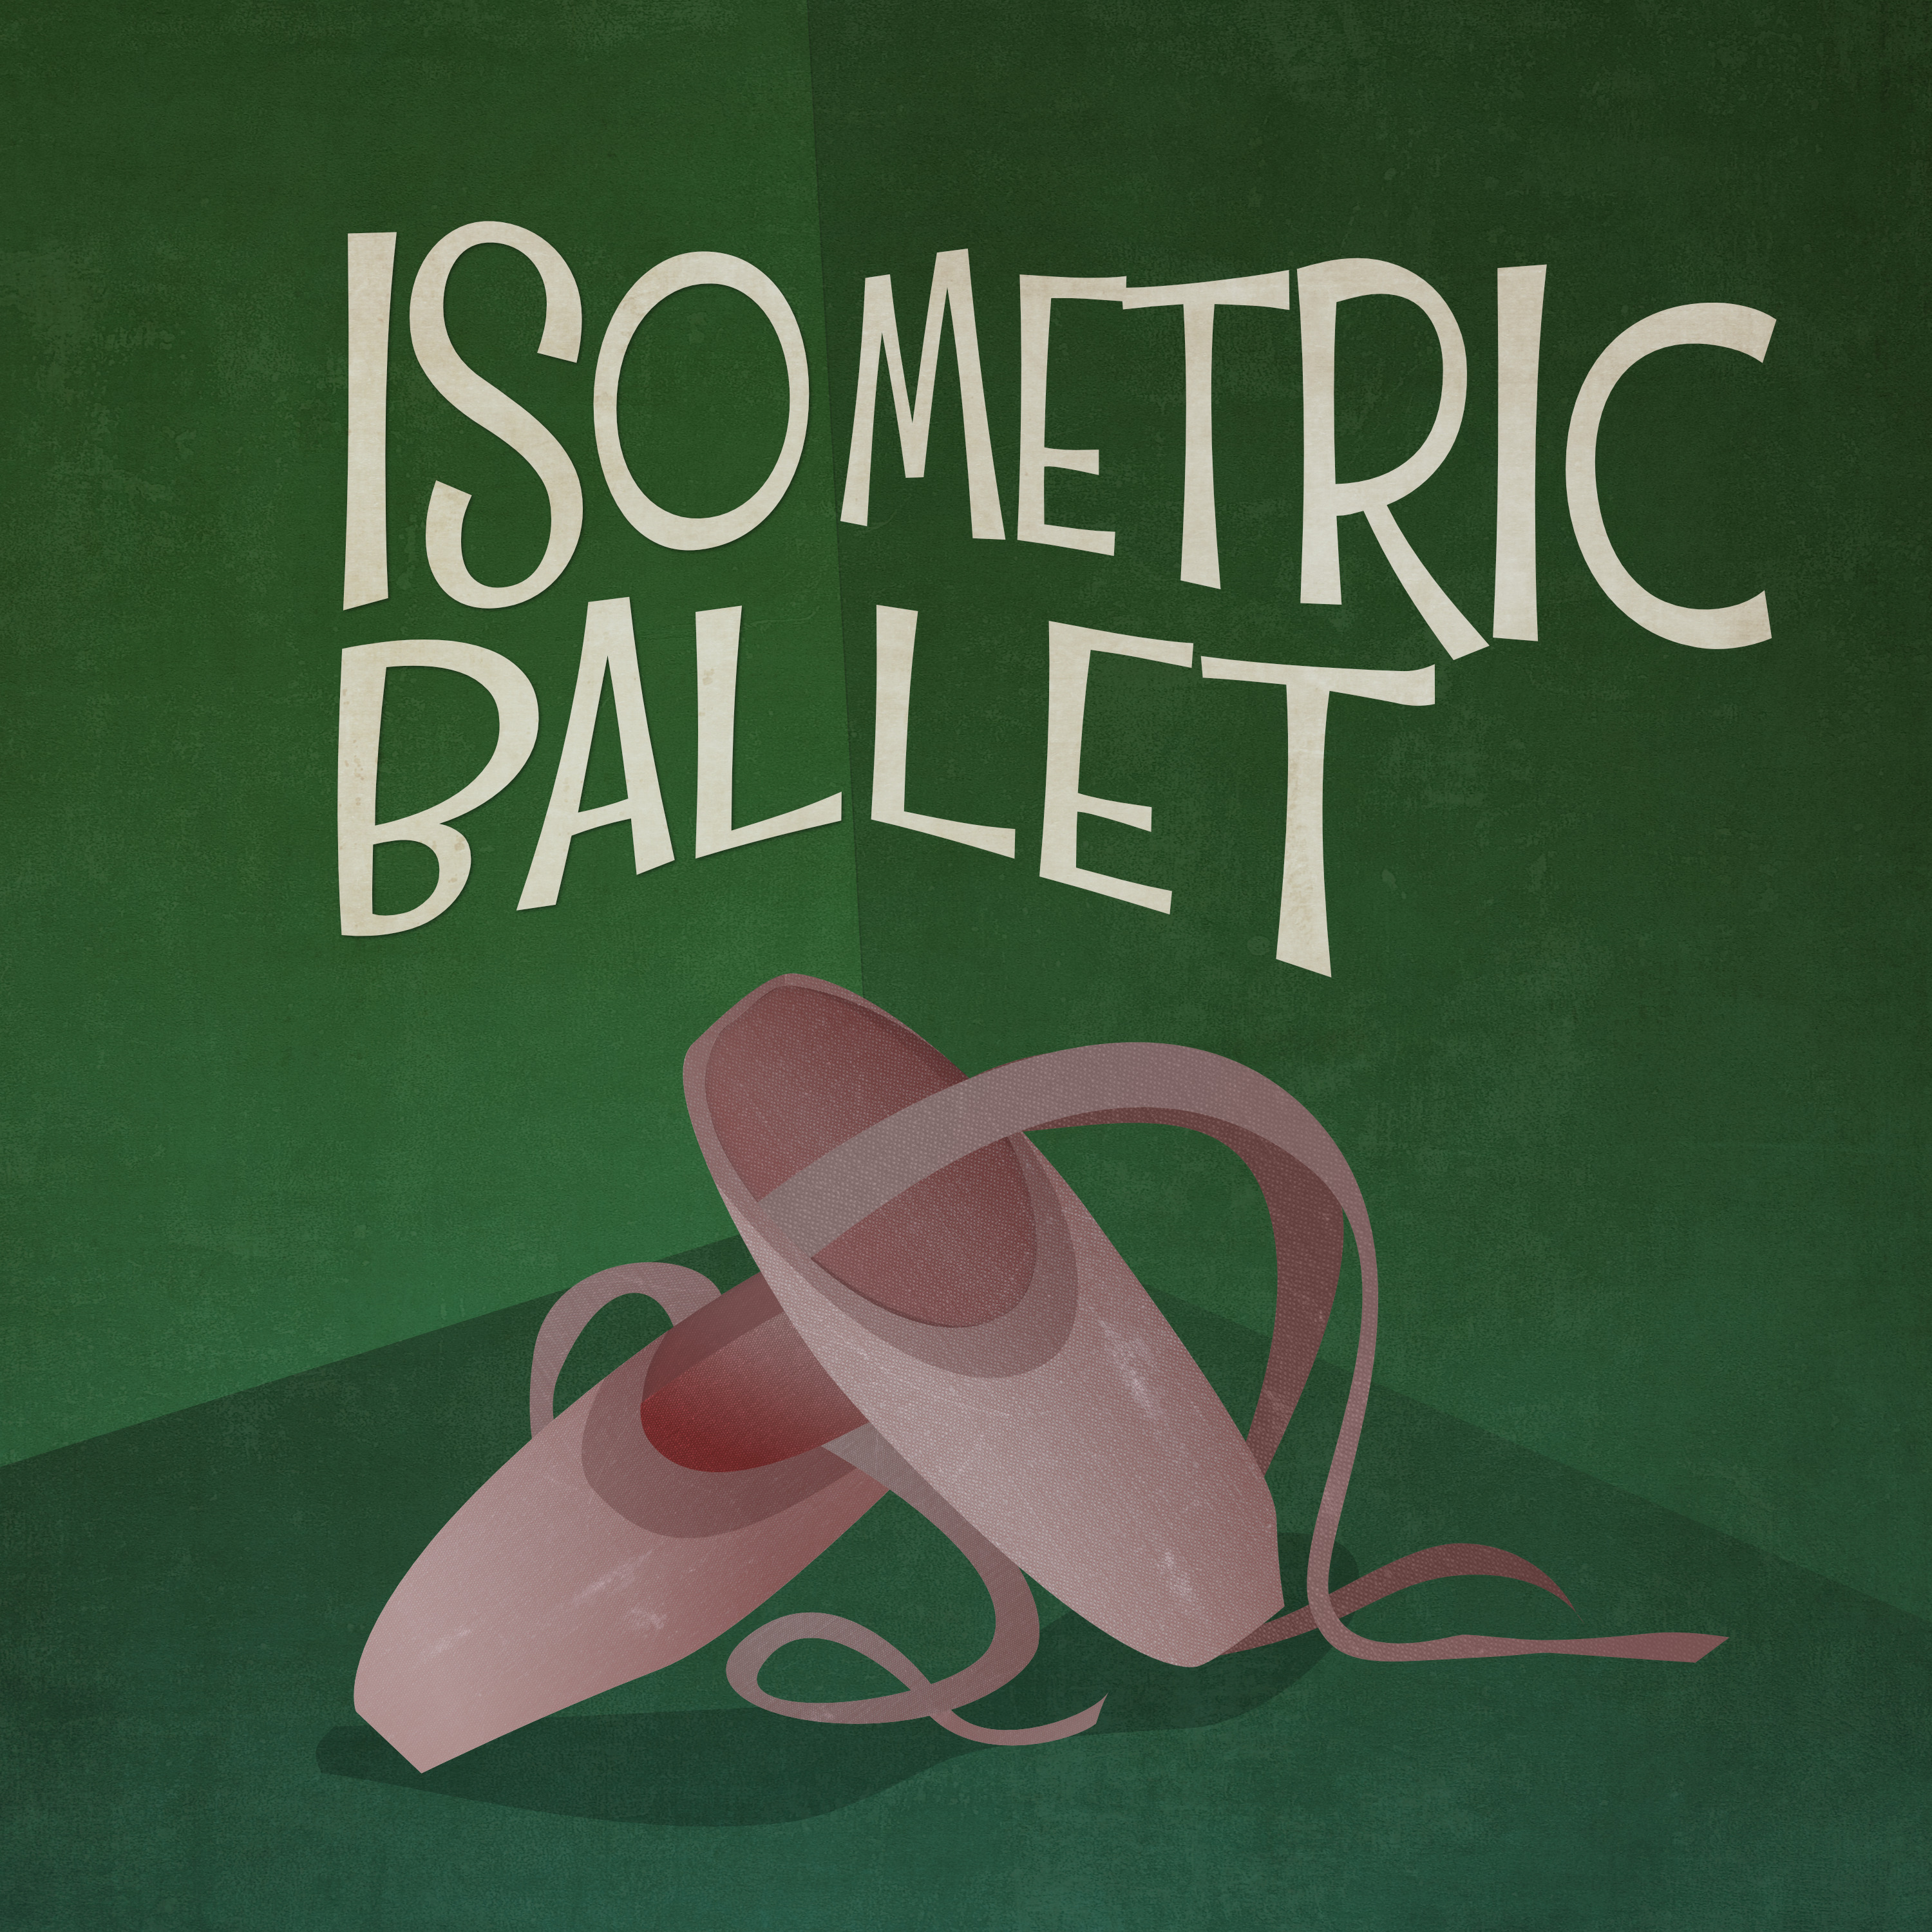 43. Isometric ballet